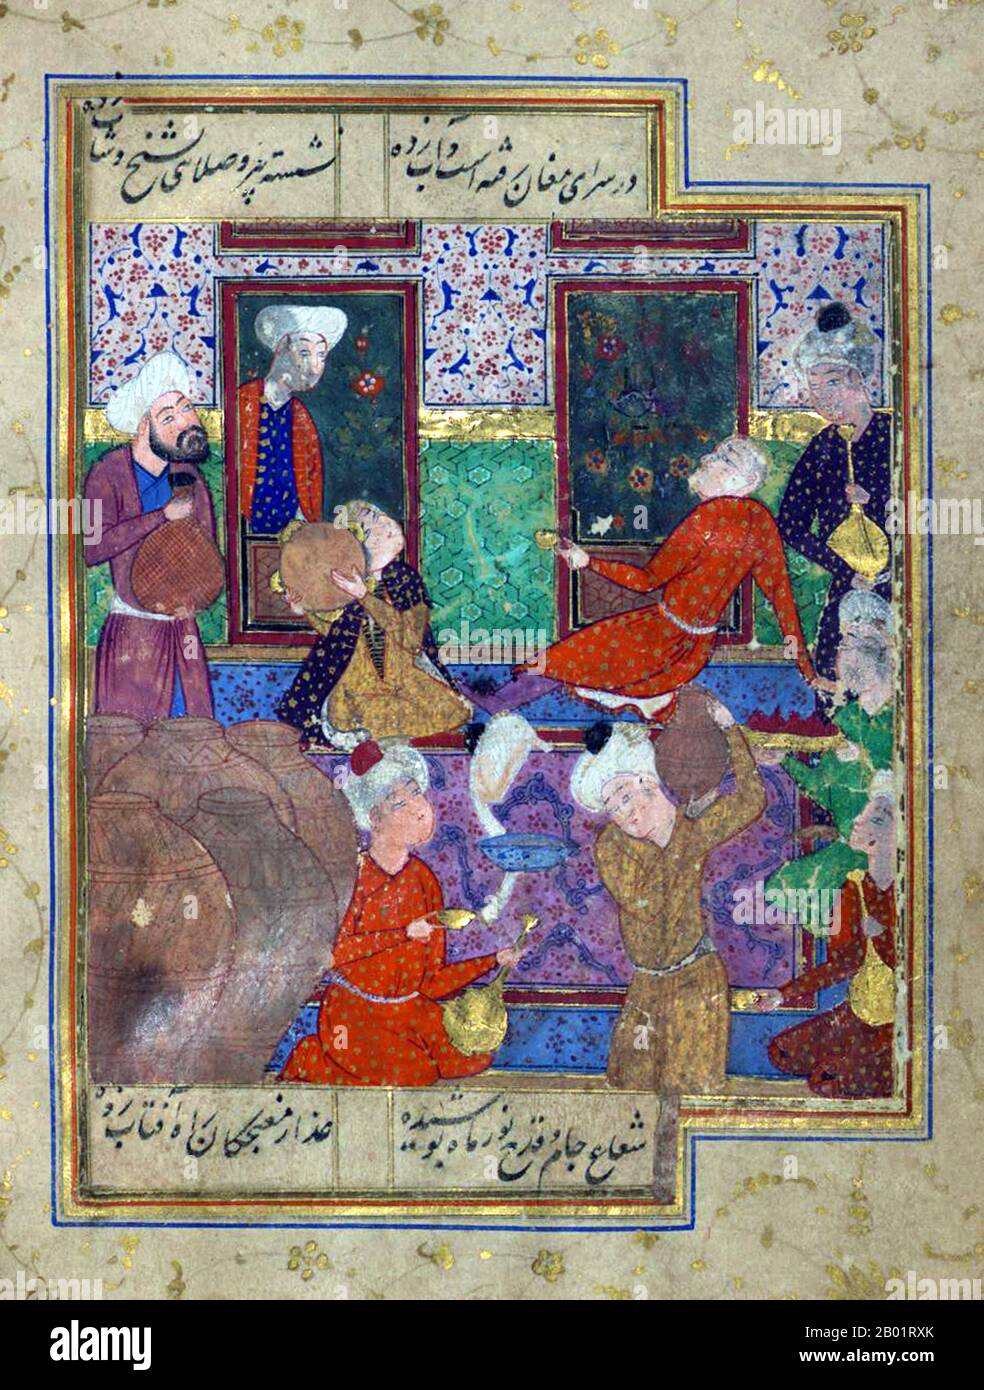 Iran/Perse : scène de taverne avec des pots de vin et des musiciens. Folio d'un divan de Hafez Shirazi (c. 1325-1390), 16e siècle. Khwāja Shamsu d-Dīn Muhammad Hāfez-e Shīrāzī, connu sous son nom de plume Hāfez, était un poète lyrique persan. Ses œuvres rassemblées composées de séries de poésie persane (divan) se trouvent dans les maisons de la plupart des locuteurs persans en Iran et en Afghanistan, ainsi qu'ailleurs dans le monde, qui apprennent ses poèmes par cœur et les utilisent comme proverbes et dictons jusqu'à ce jour. Sa vie et ses poèmes ont fait l'objet de nombreuses analyses, commentaires et interprétations. Banque D'Images